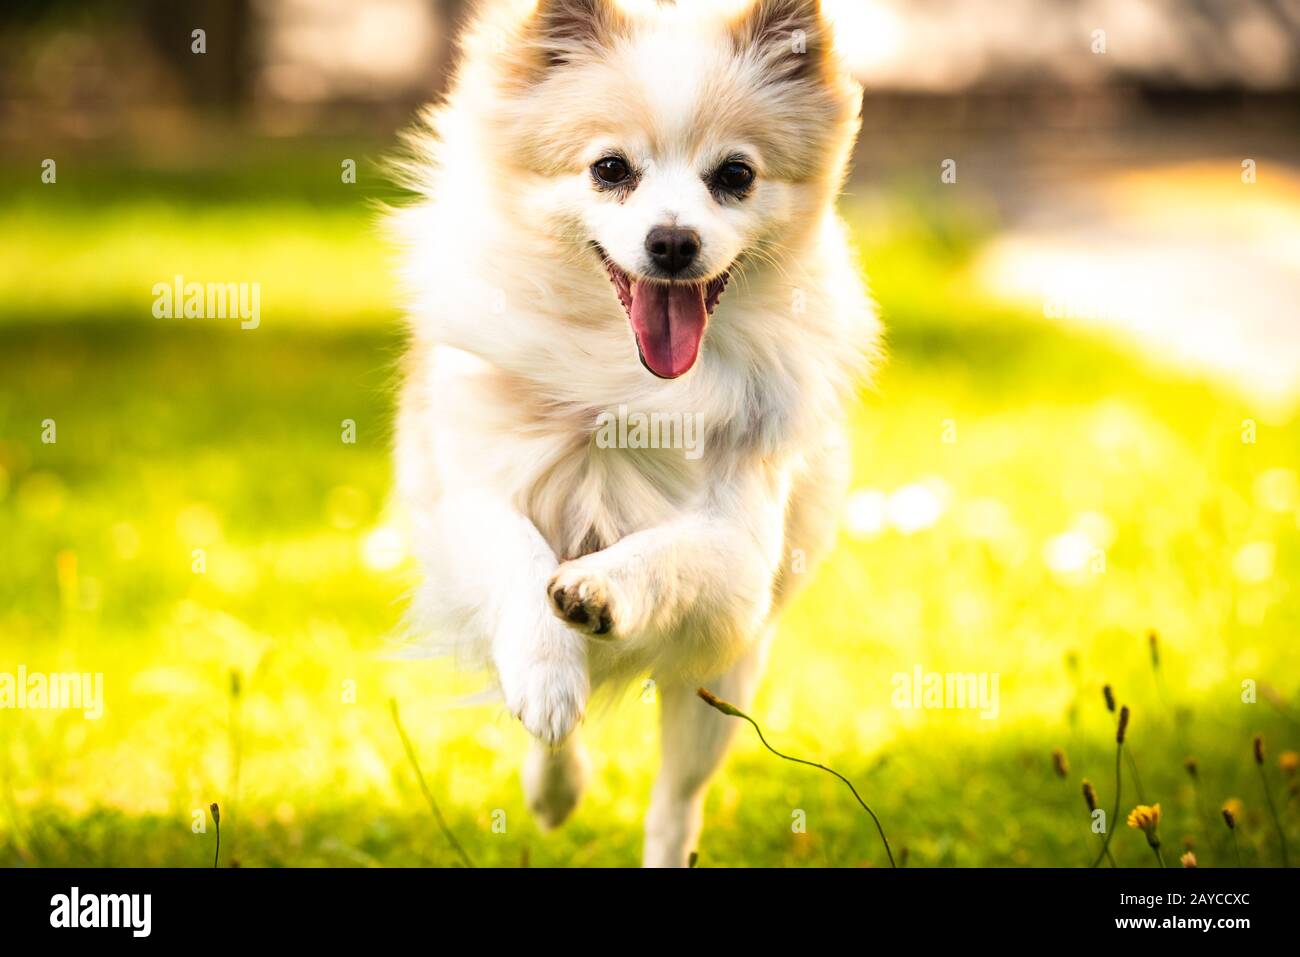 Pomeranian Hund spitz klein in Richtung Kamera läuft Stockfotografie - Alamy